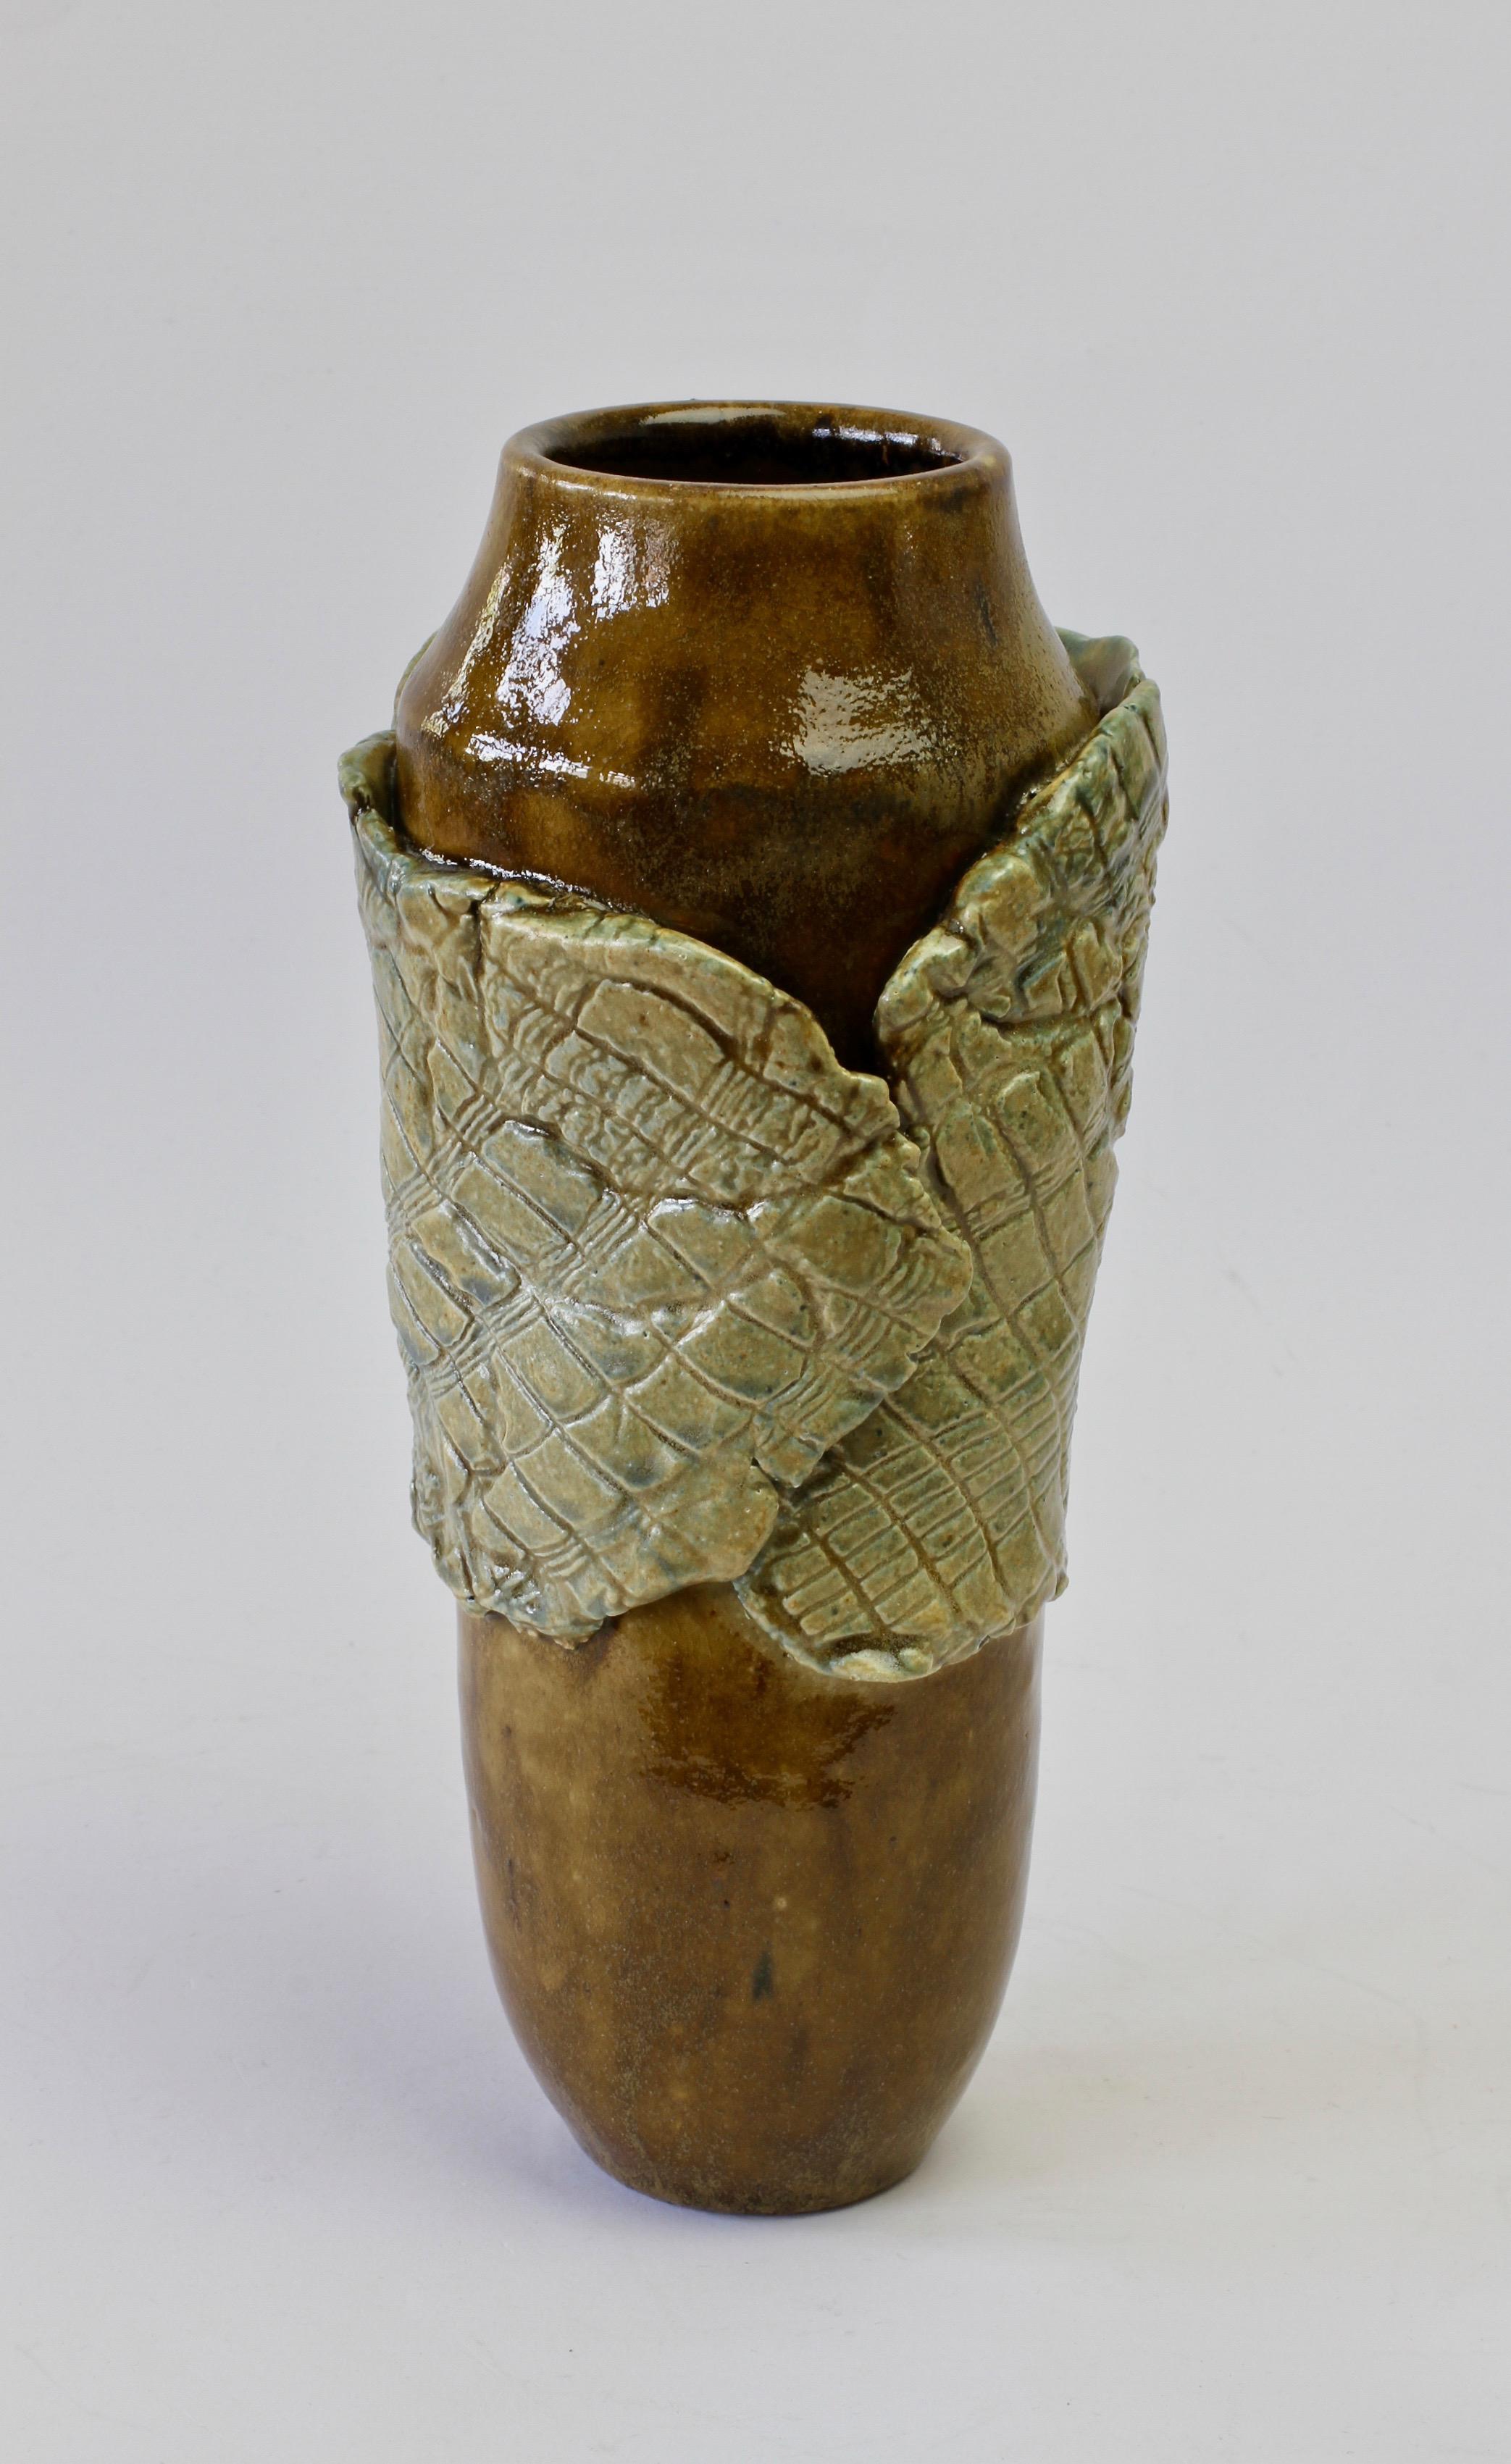 Vase en poterie d'art européen signé par Signe Pistorious-Lehmann (1925-2012). Une belle forme organique qui fait référence aux formes naturelles des plantes avec l'émail brun comme du bois du vase qui est enveloppé dans ce qui ressemble beaucoup à